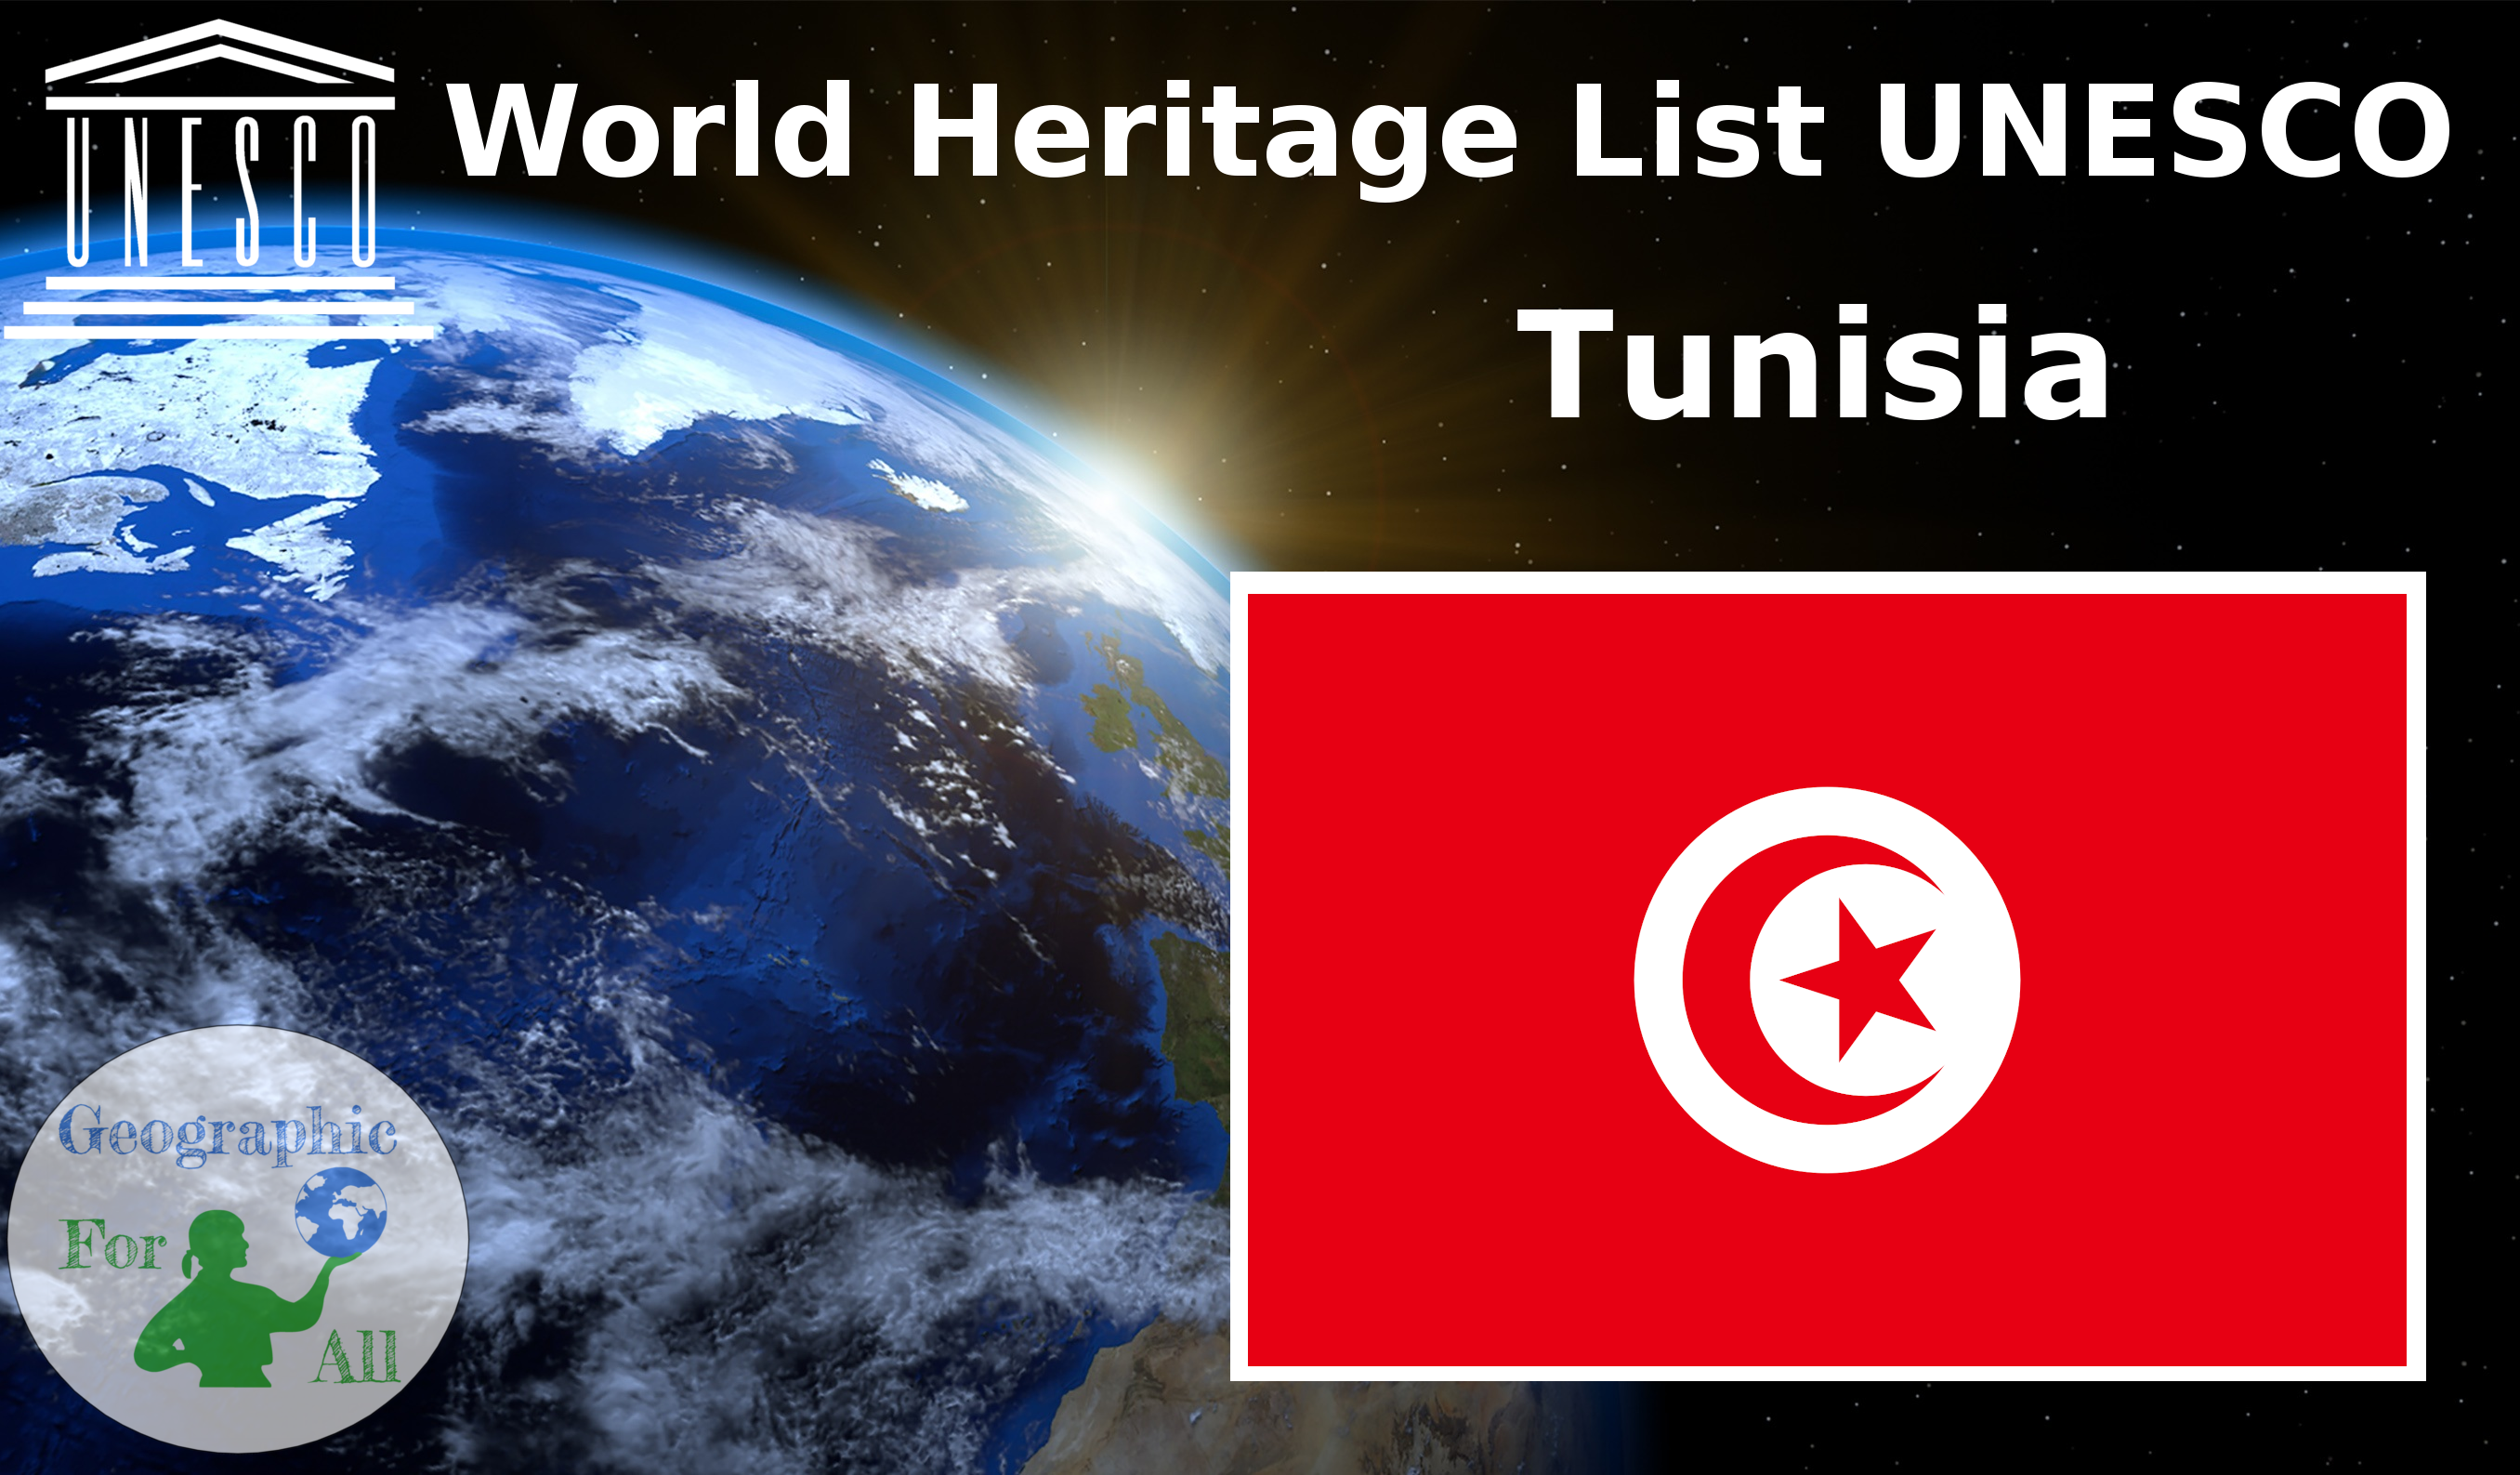 World Heritage List UNESCO - Tunisia